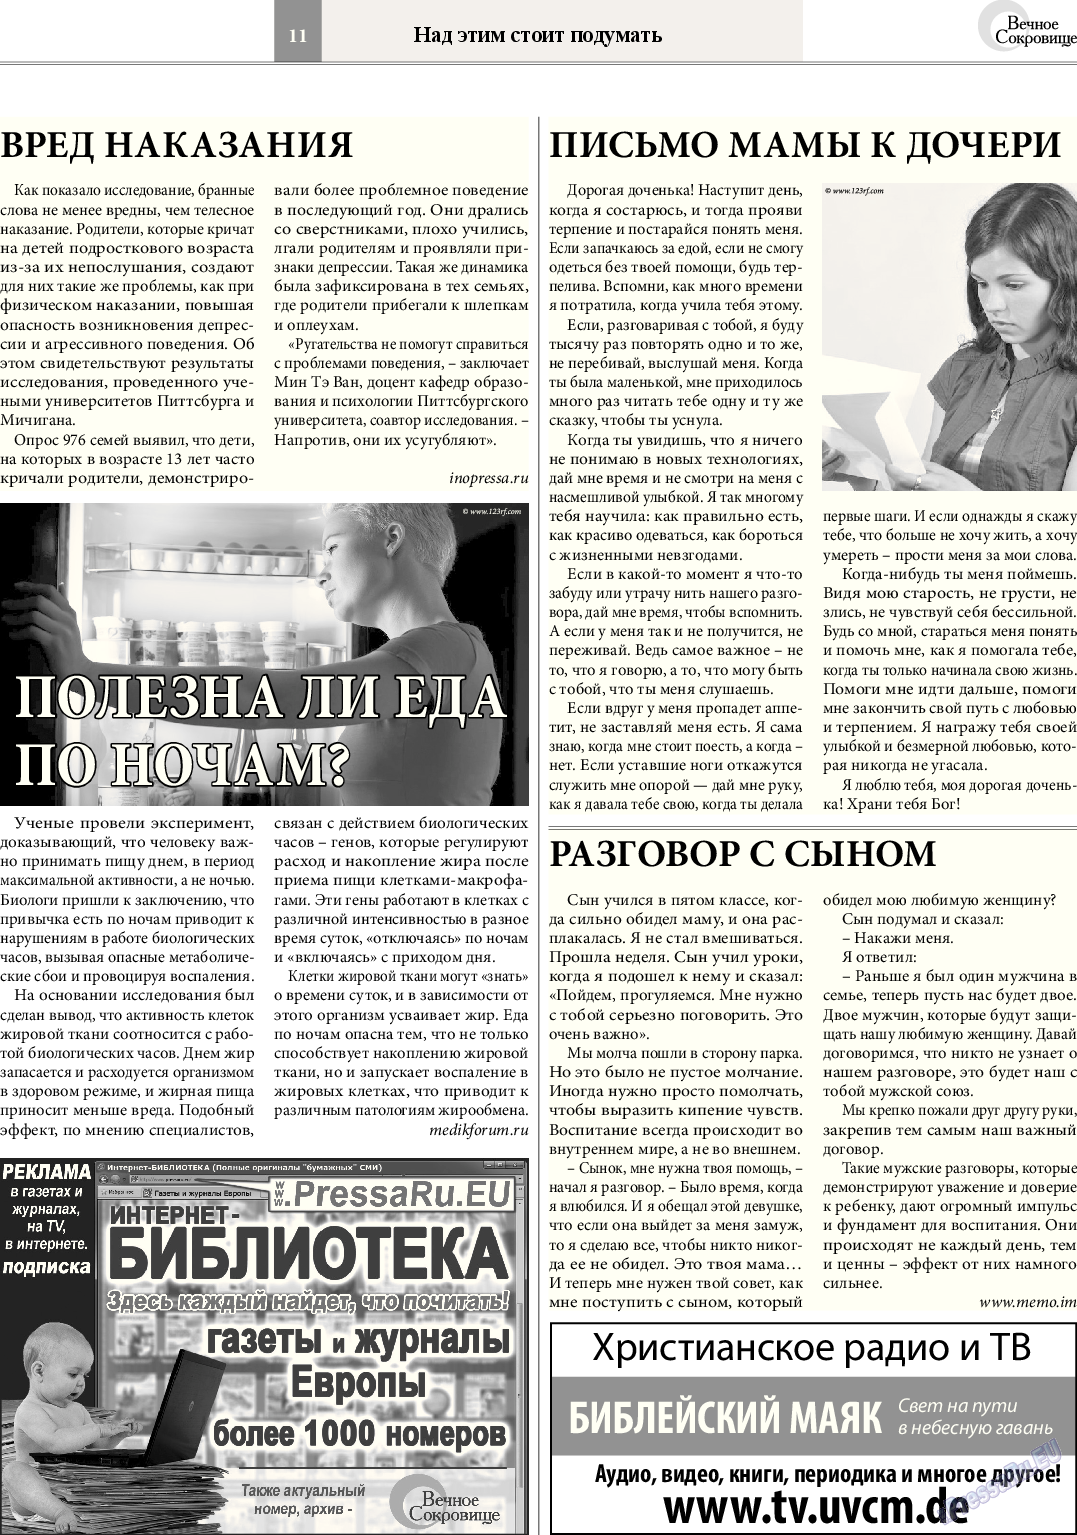 Вечное сокровище, газета. 2014 №4 стр.11